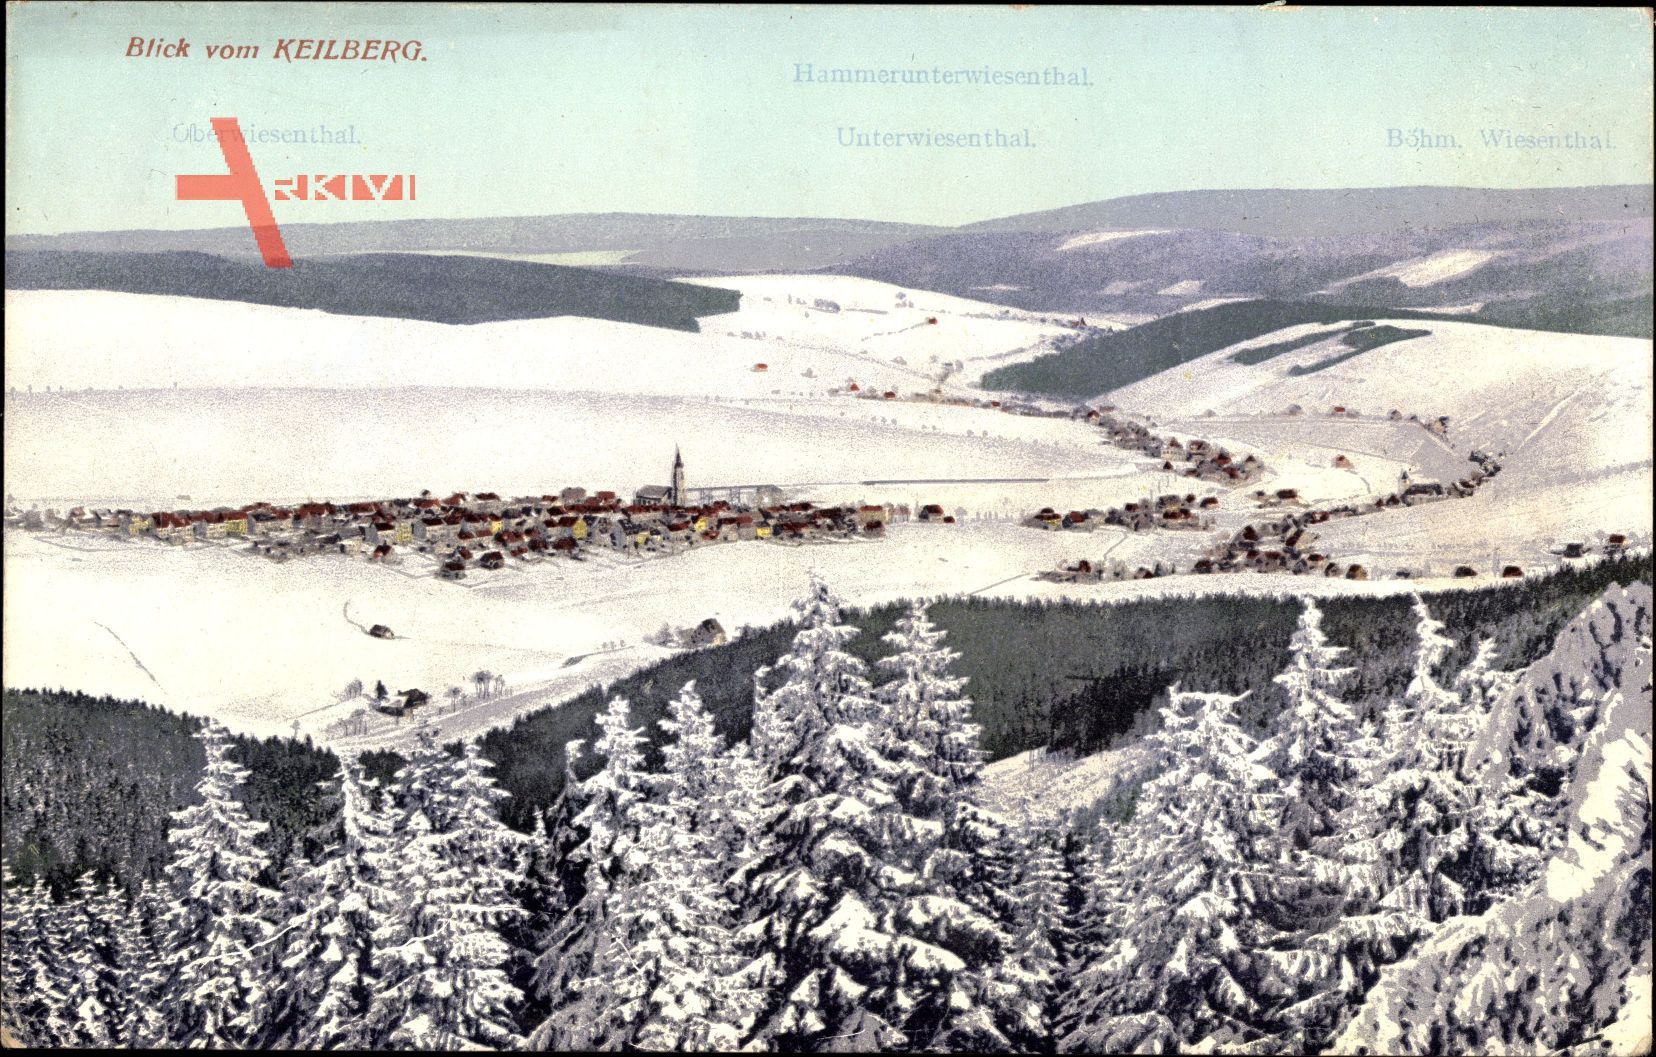 Oberwiesenthal Erzgebirge, Blick vom Keilberg auf Stadt, Winter, Schnee